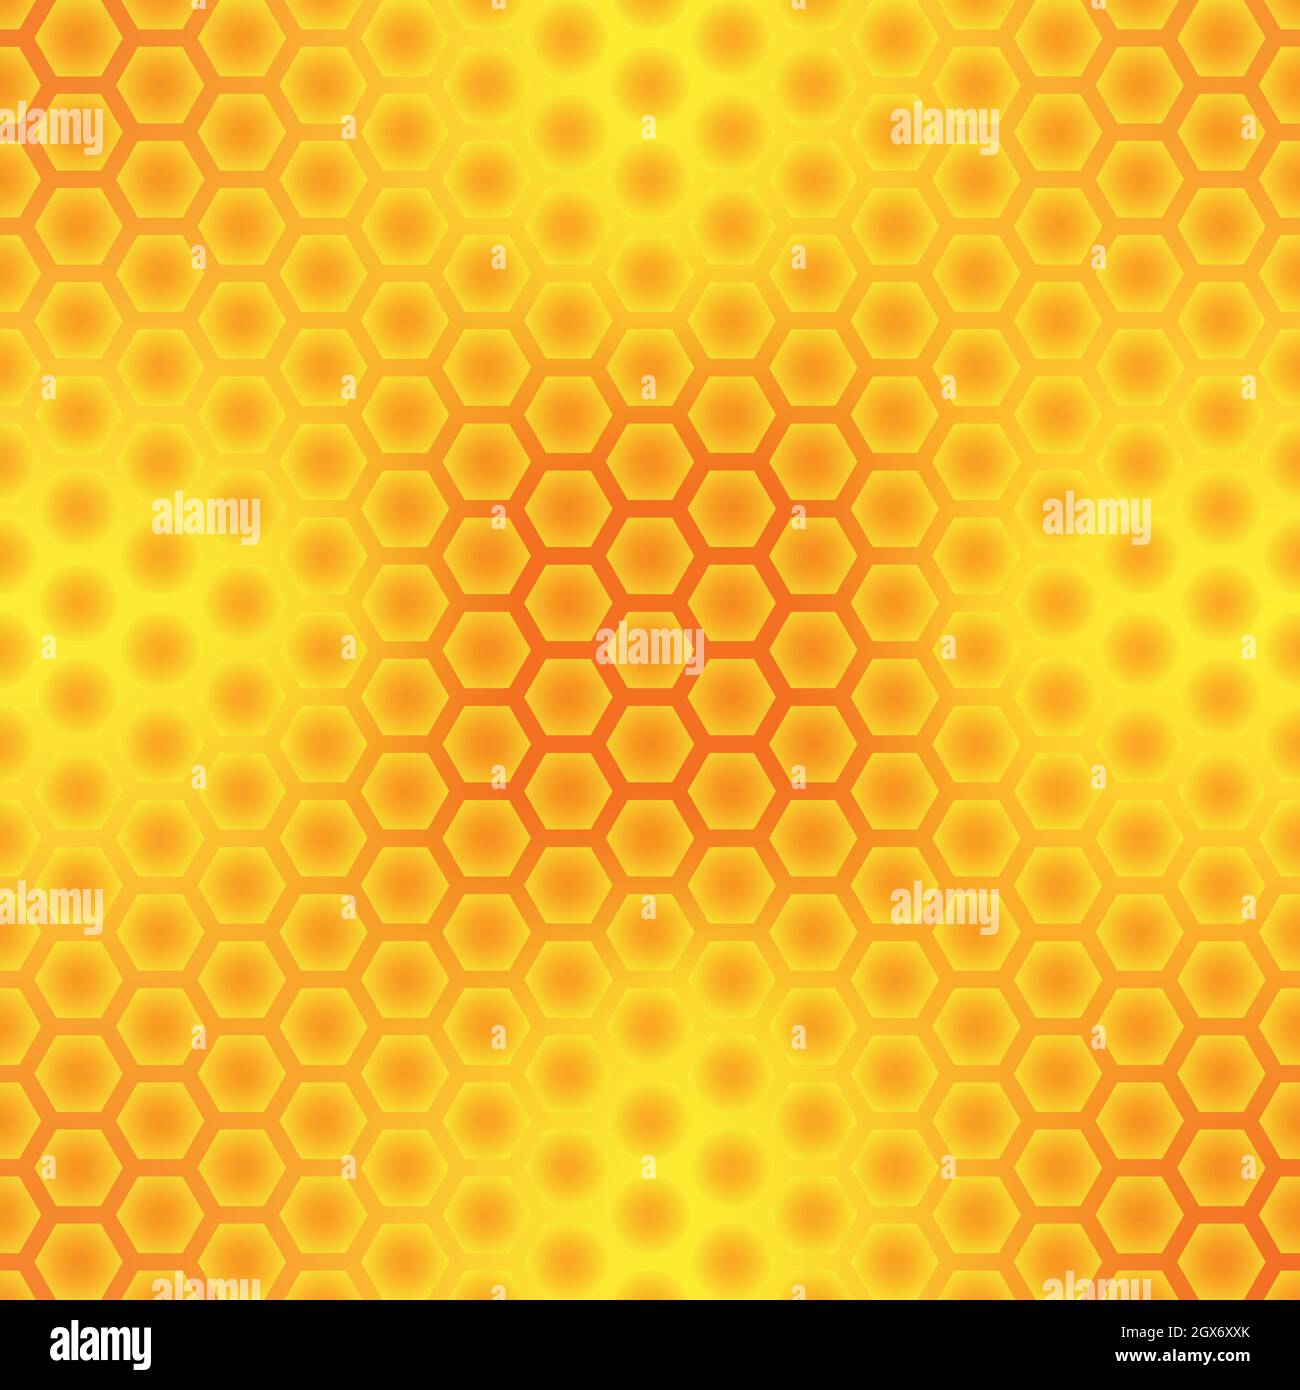 Motif abstrait, couleur miel et mosaïque hexagonale. Cadre doré jaune or fond. Illustration vectorielle Illustration de Vecteur